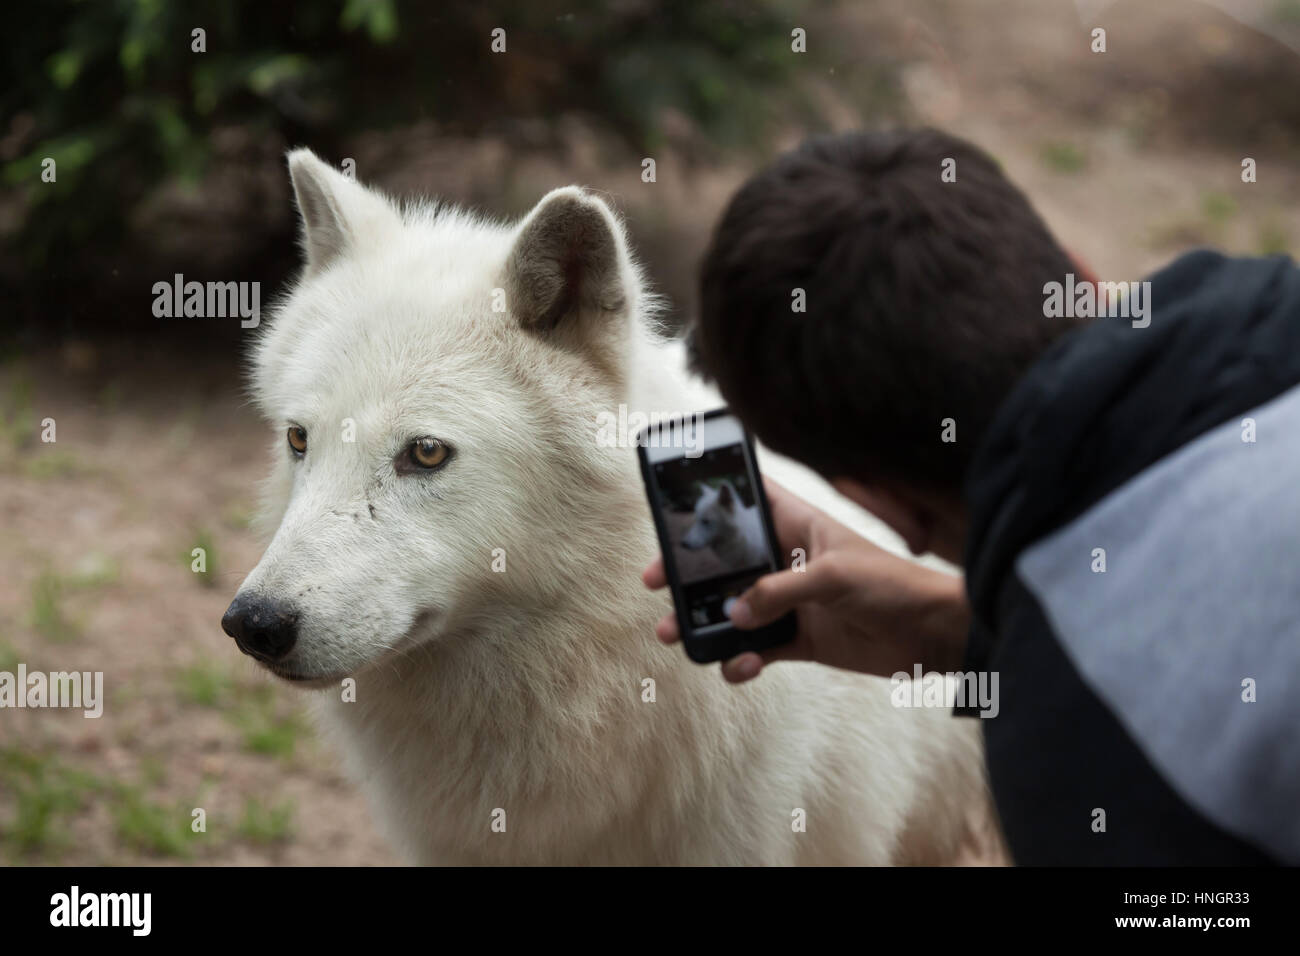 Visiteur utilise un smartphone pour photographier le loup arctique (Canis lupus arctos), également connu sous le nom de l'île Melville wolf à La Fleche Zoo dans la vallée de la Loire, France. Banque D'Images